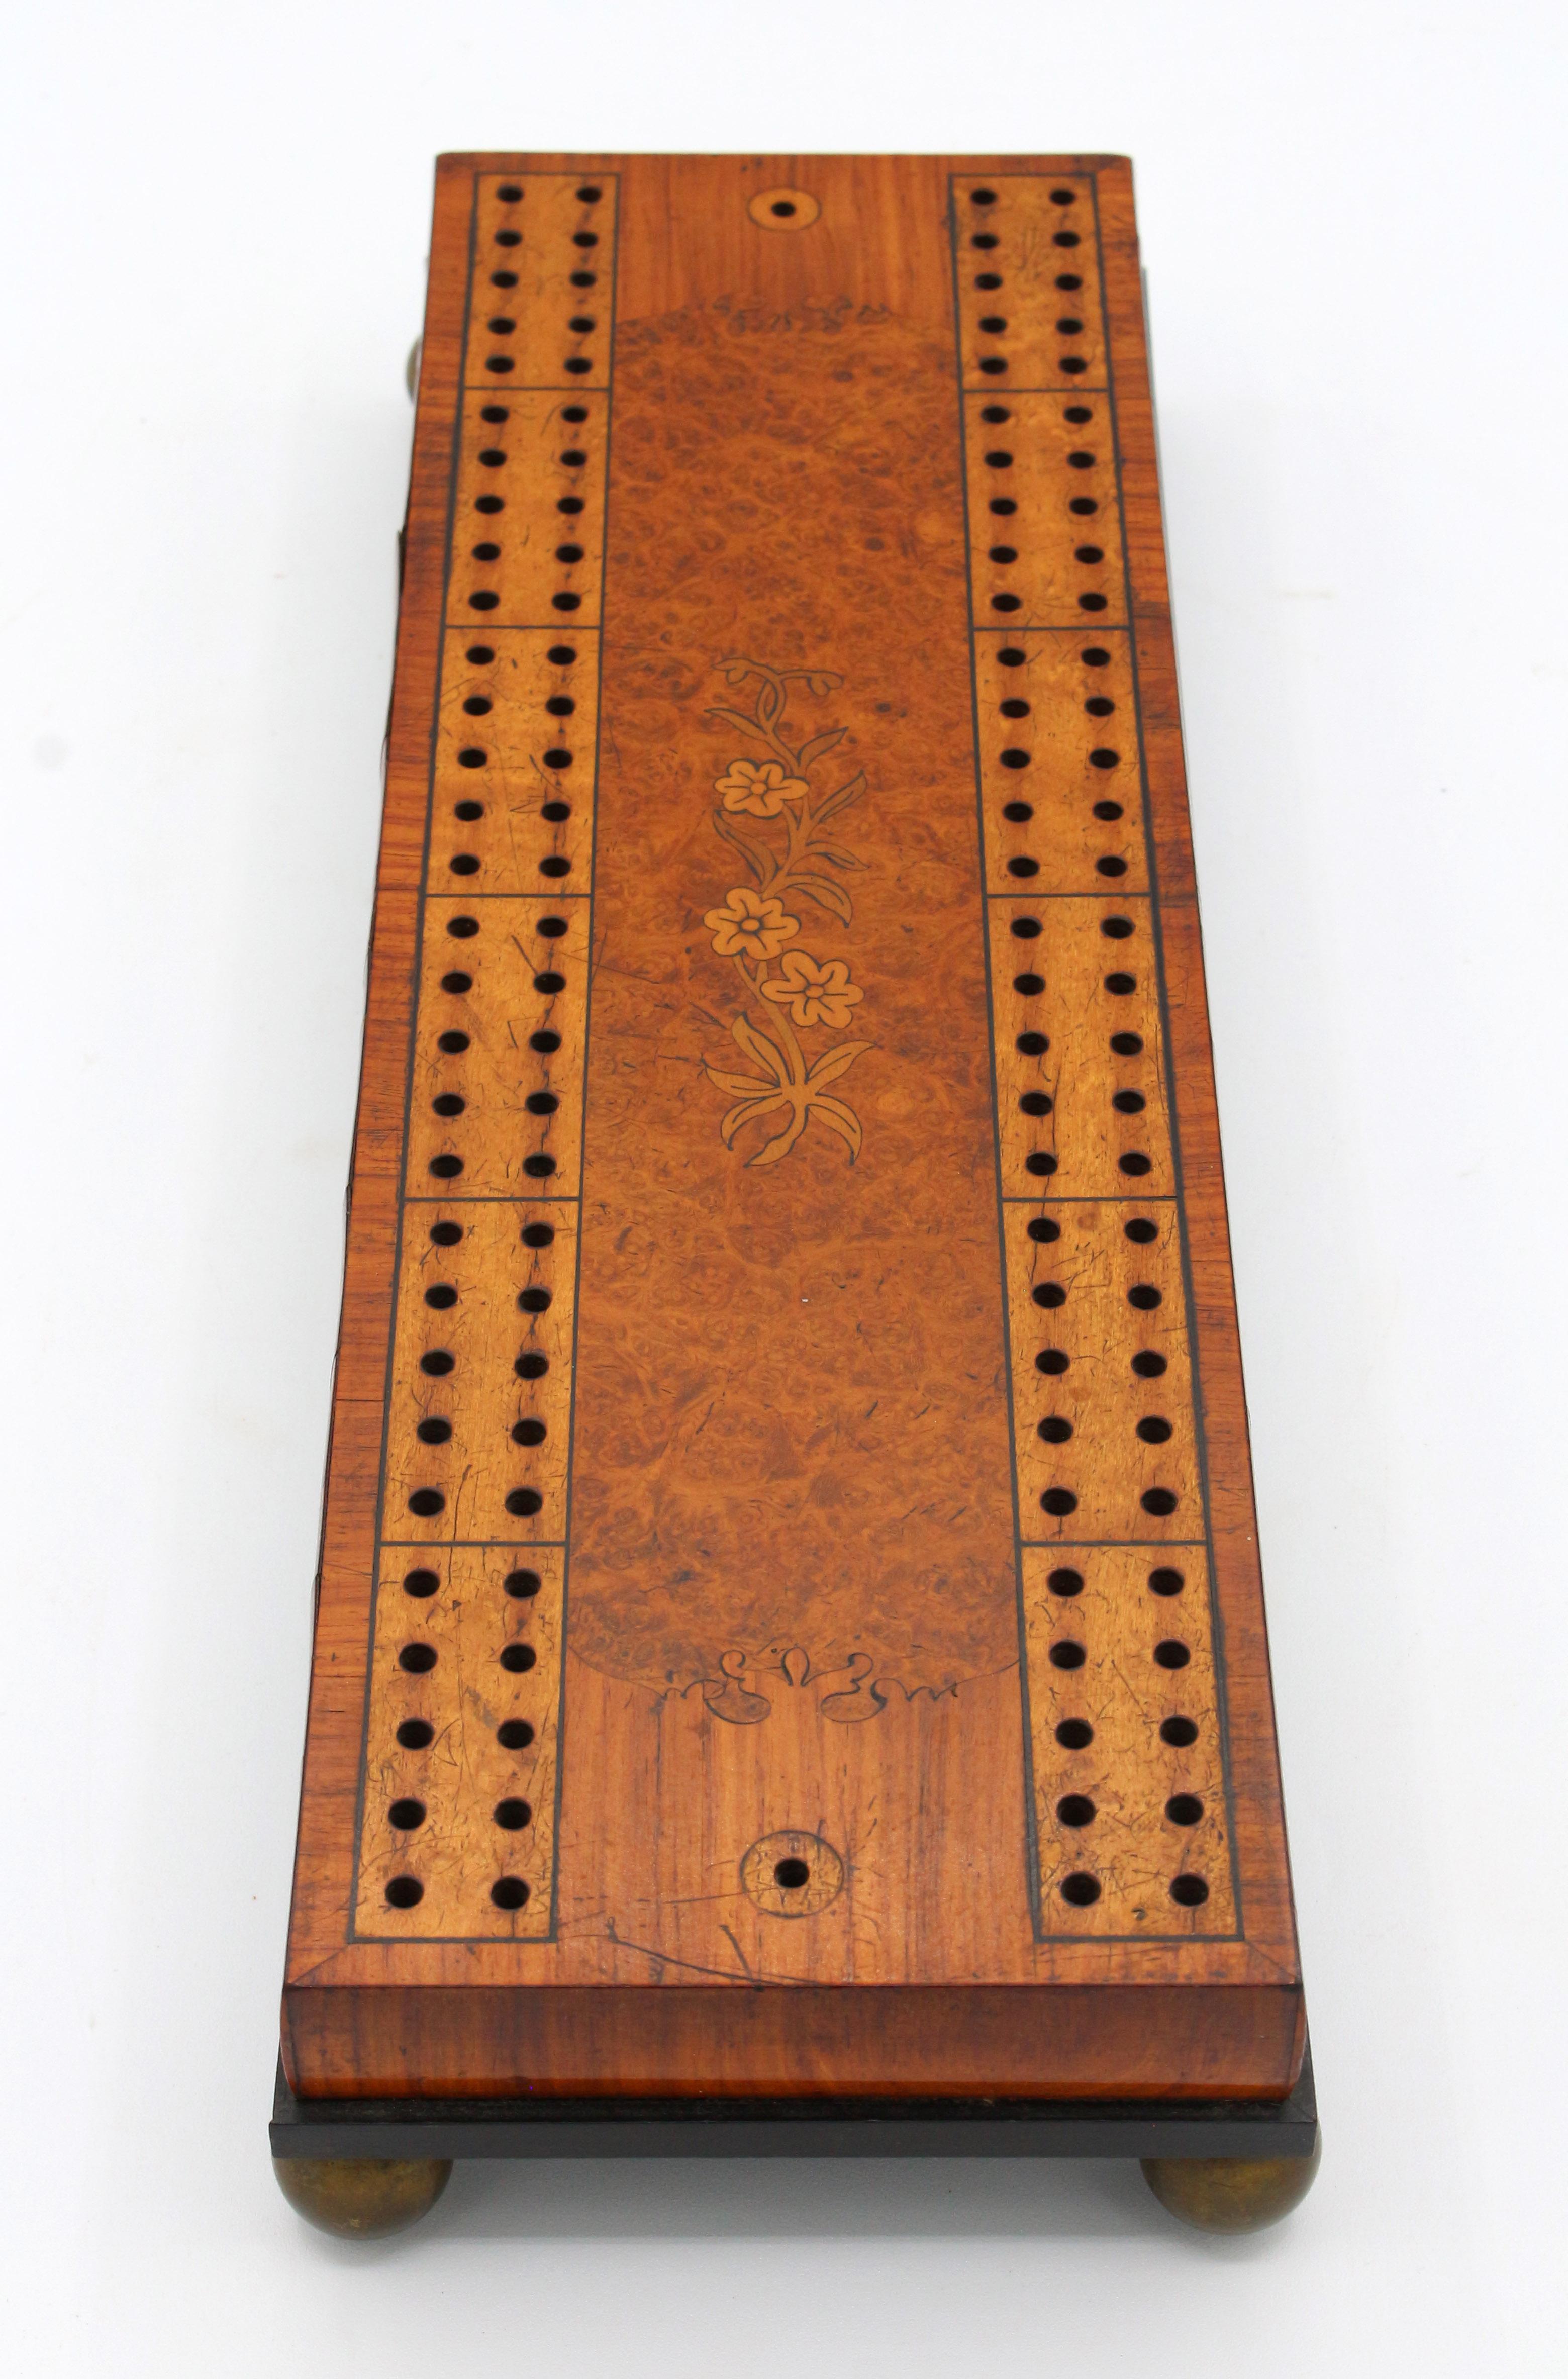 CIRCA 1860-80 Cribbage Board mit Intarsien, Englisch. Amboyna-Maserholz mit Nussbaum, Satinholz, Buchsbaum, Königsholz und Ebenholz auf Kugelfüßen aus Messing. So schön, wie sie sind! Die Heringe sind Ersatzstücke aus gedrechseltem Holz.
12 5/8